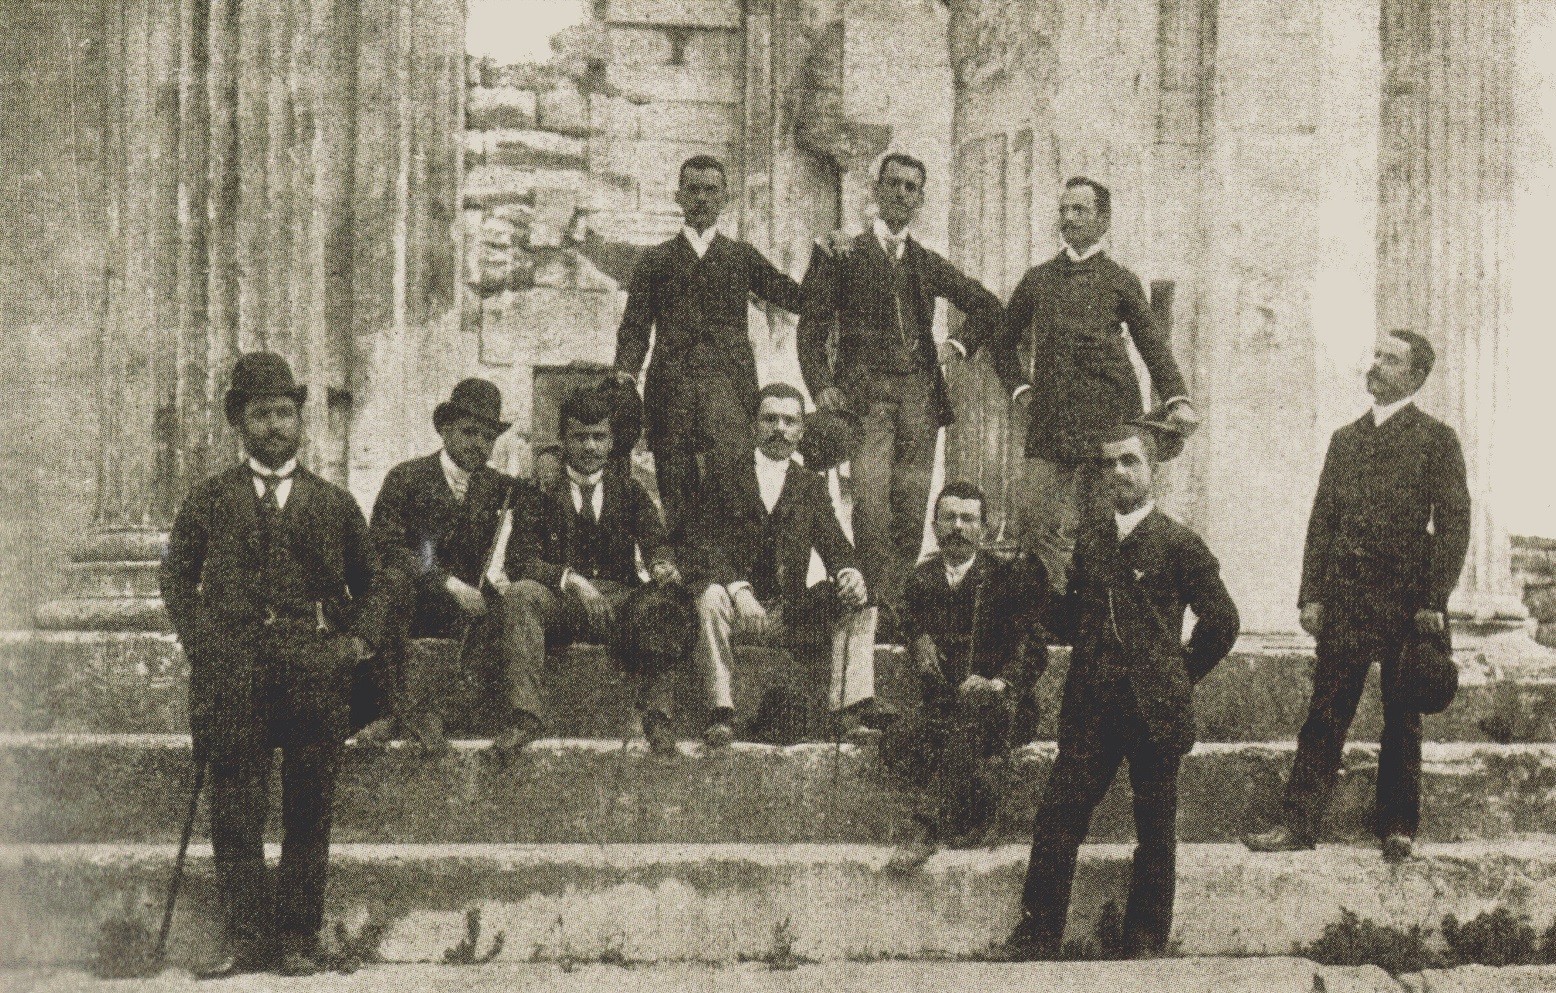 Οι πρώτοι διπλωματούχοι της Σχολής Πολιτικών Μηχανικών μπροστά στο Ερεχθείο το 1890